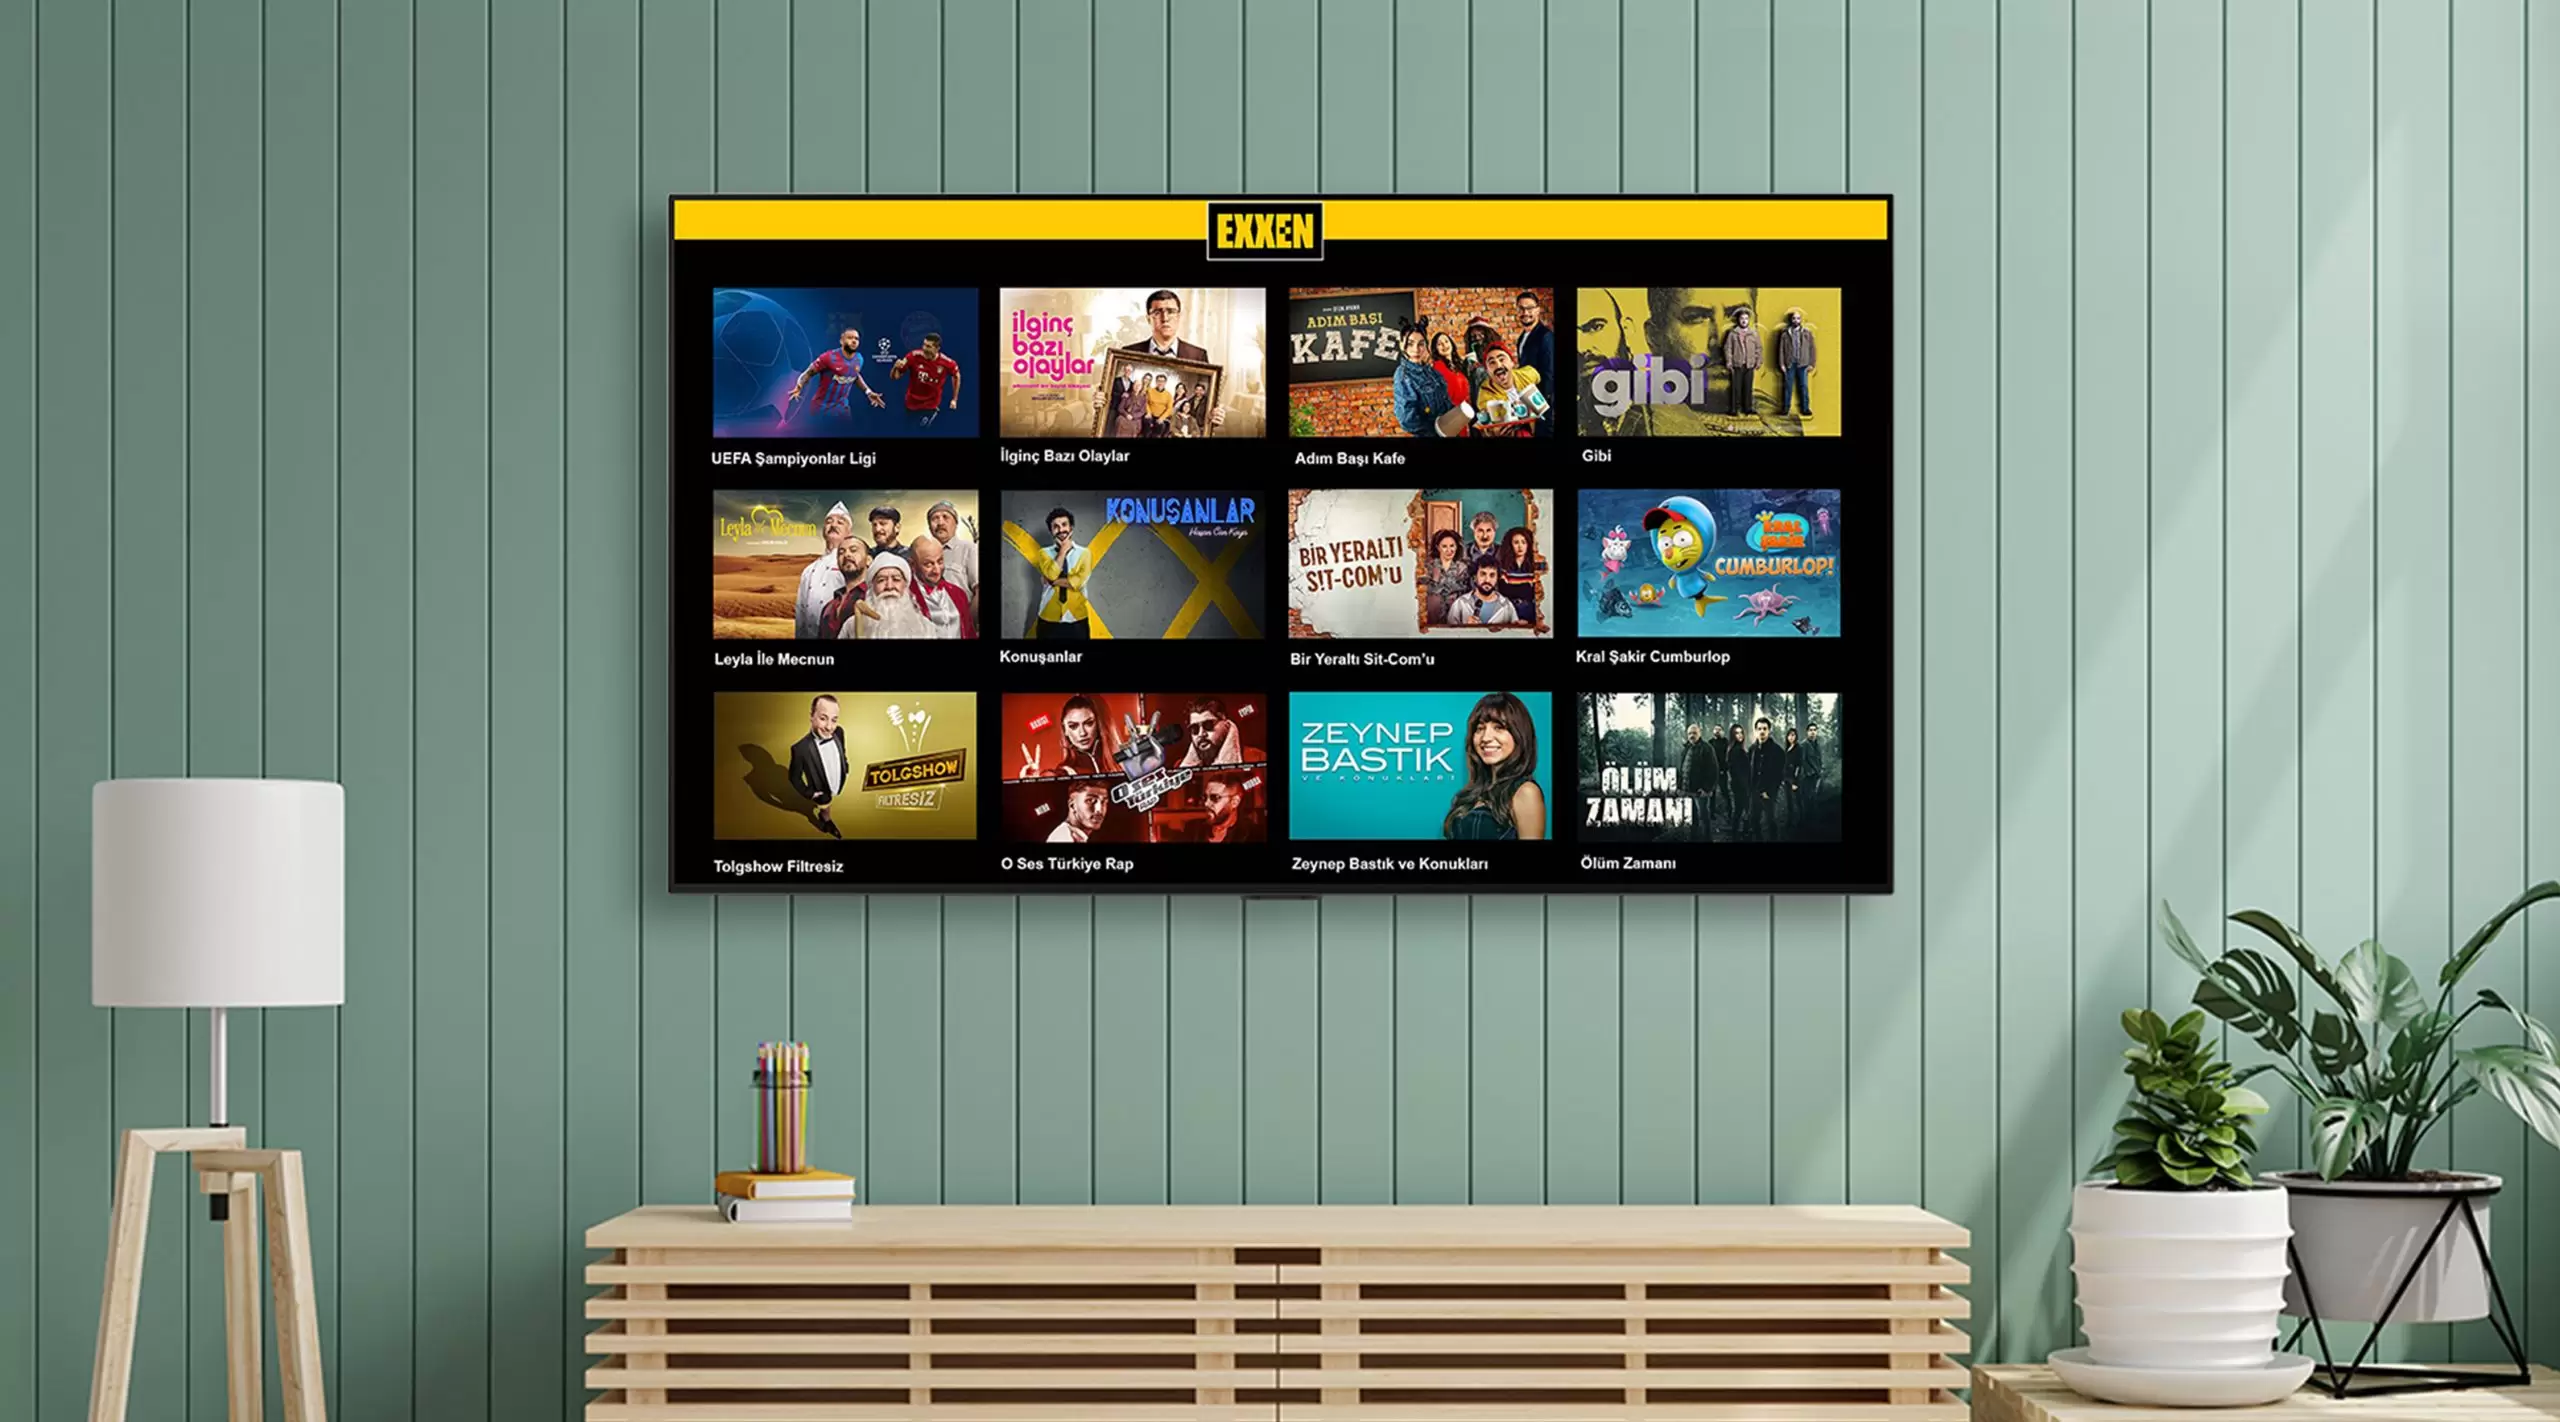 LG Smart TV’lerde Exxen Uygulaması